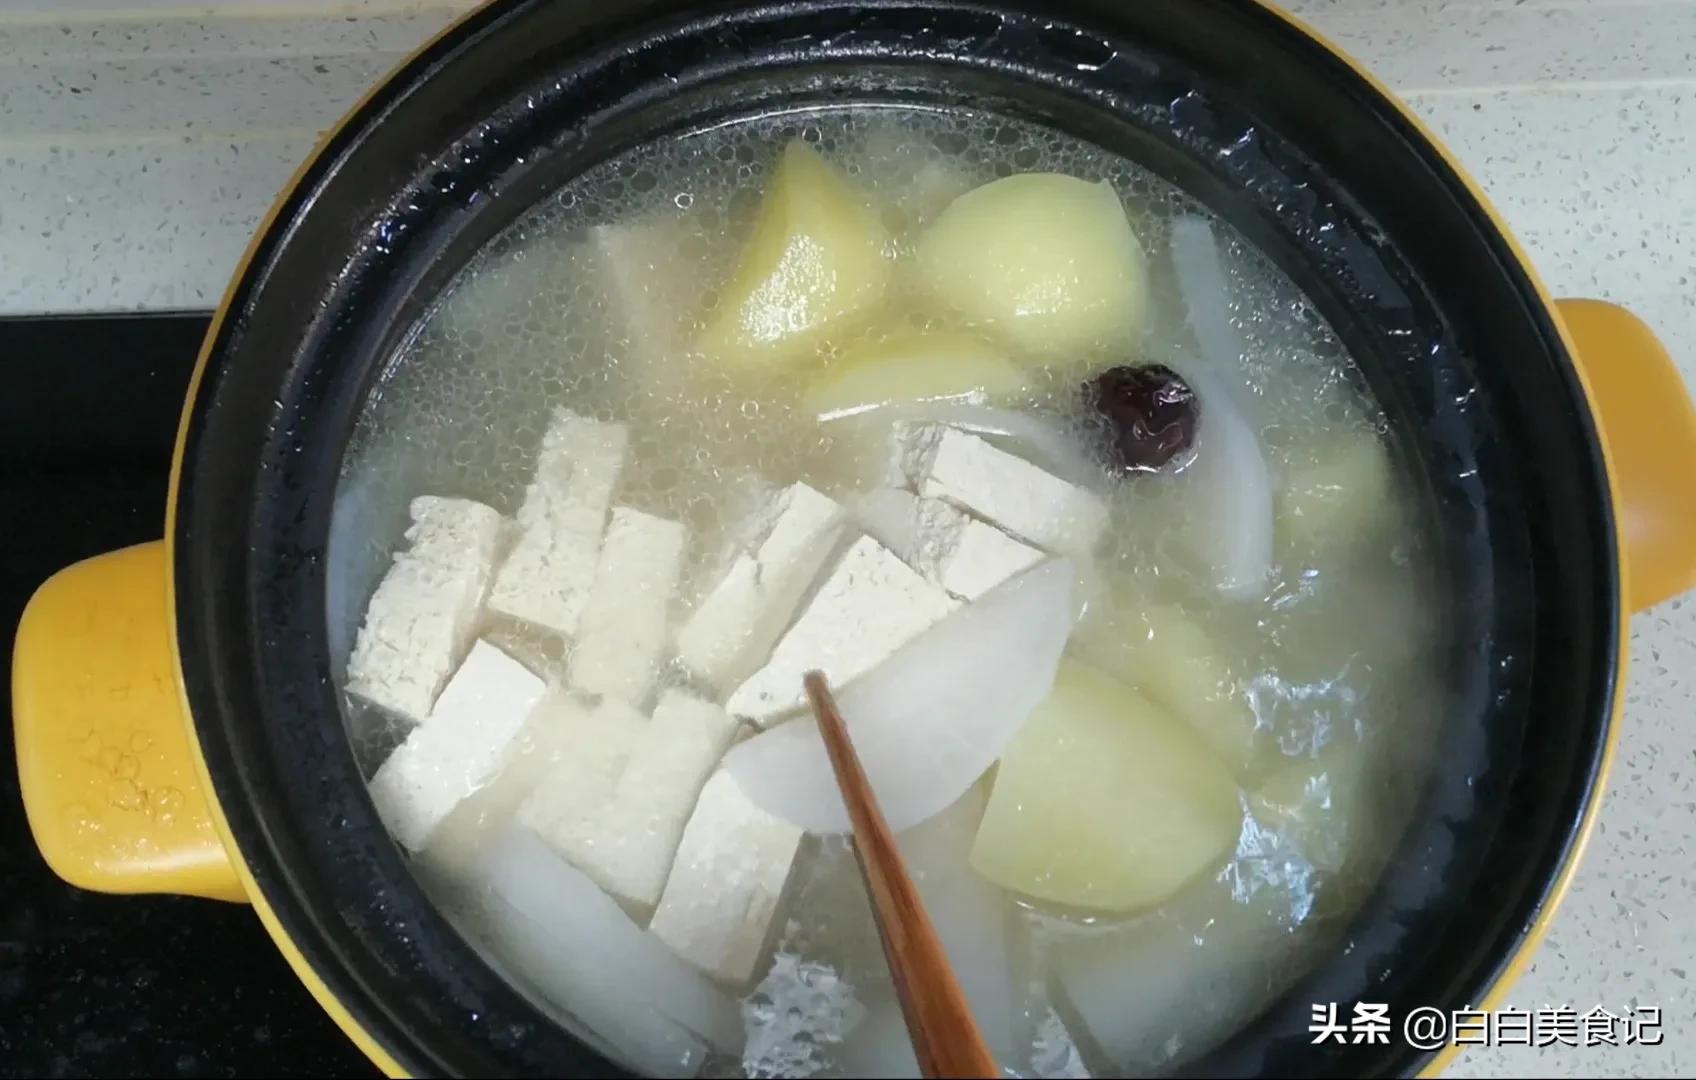 白萝卜排骨汤，砂锅煲可以使食物和汤长时间焖煮使肉烂，汤汁鲜美